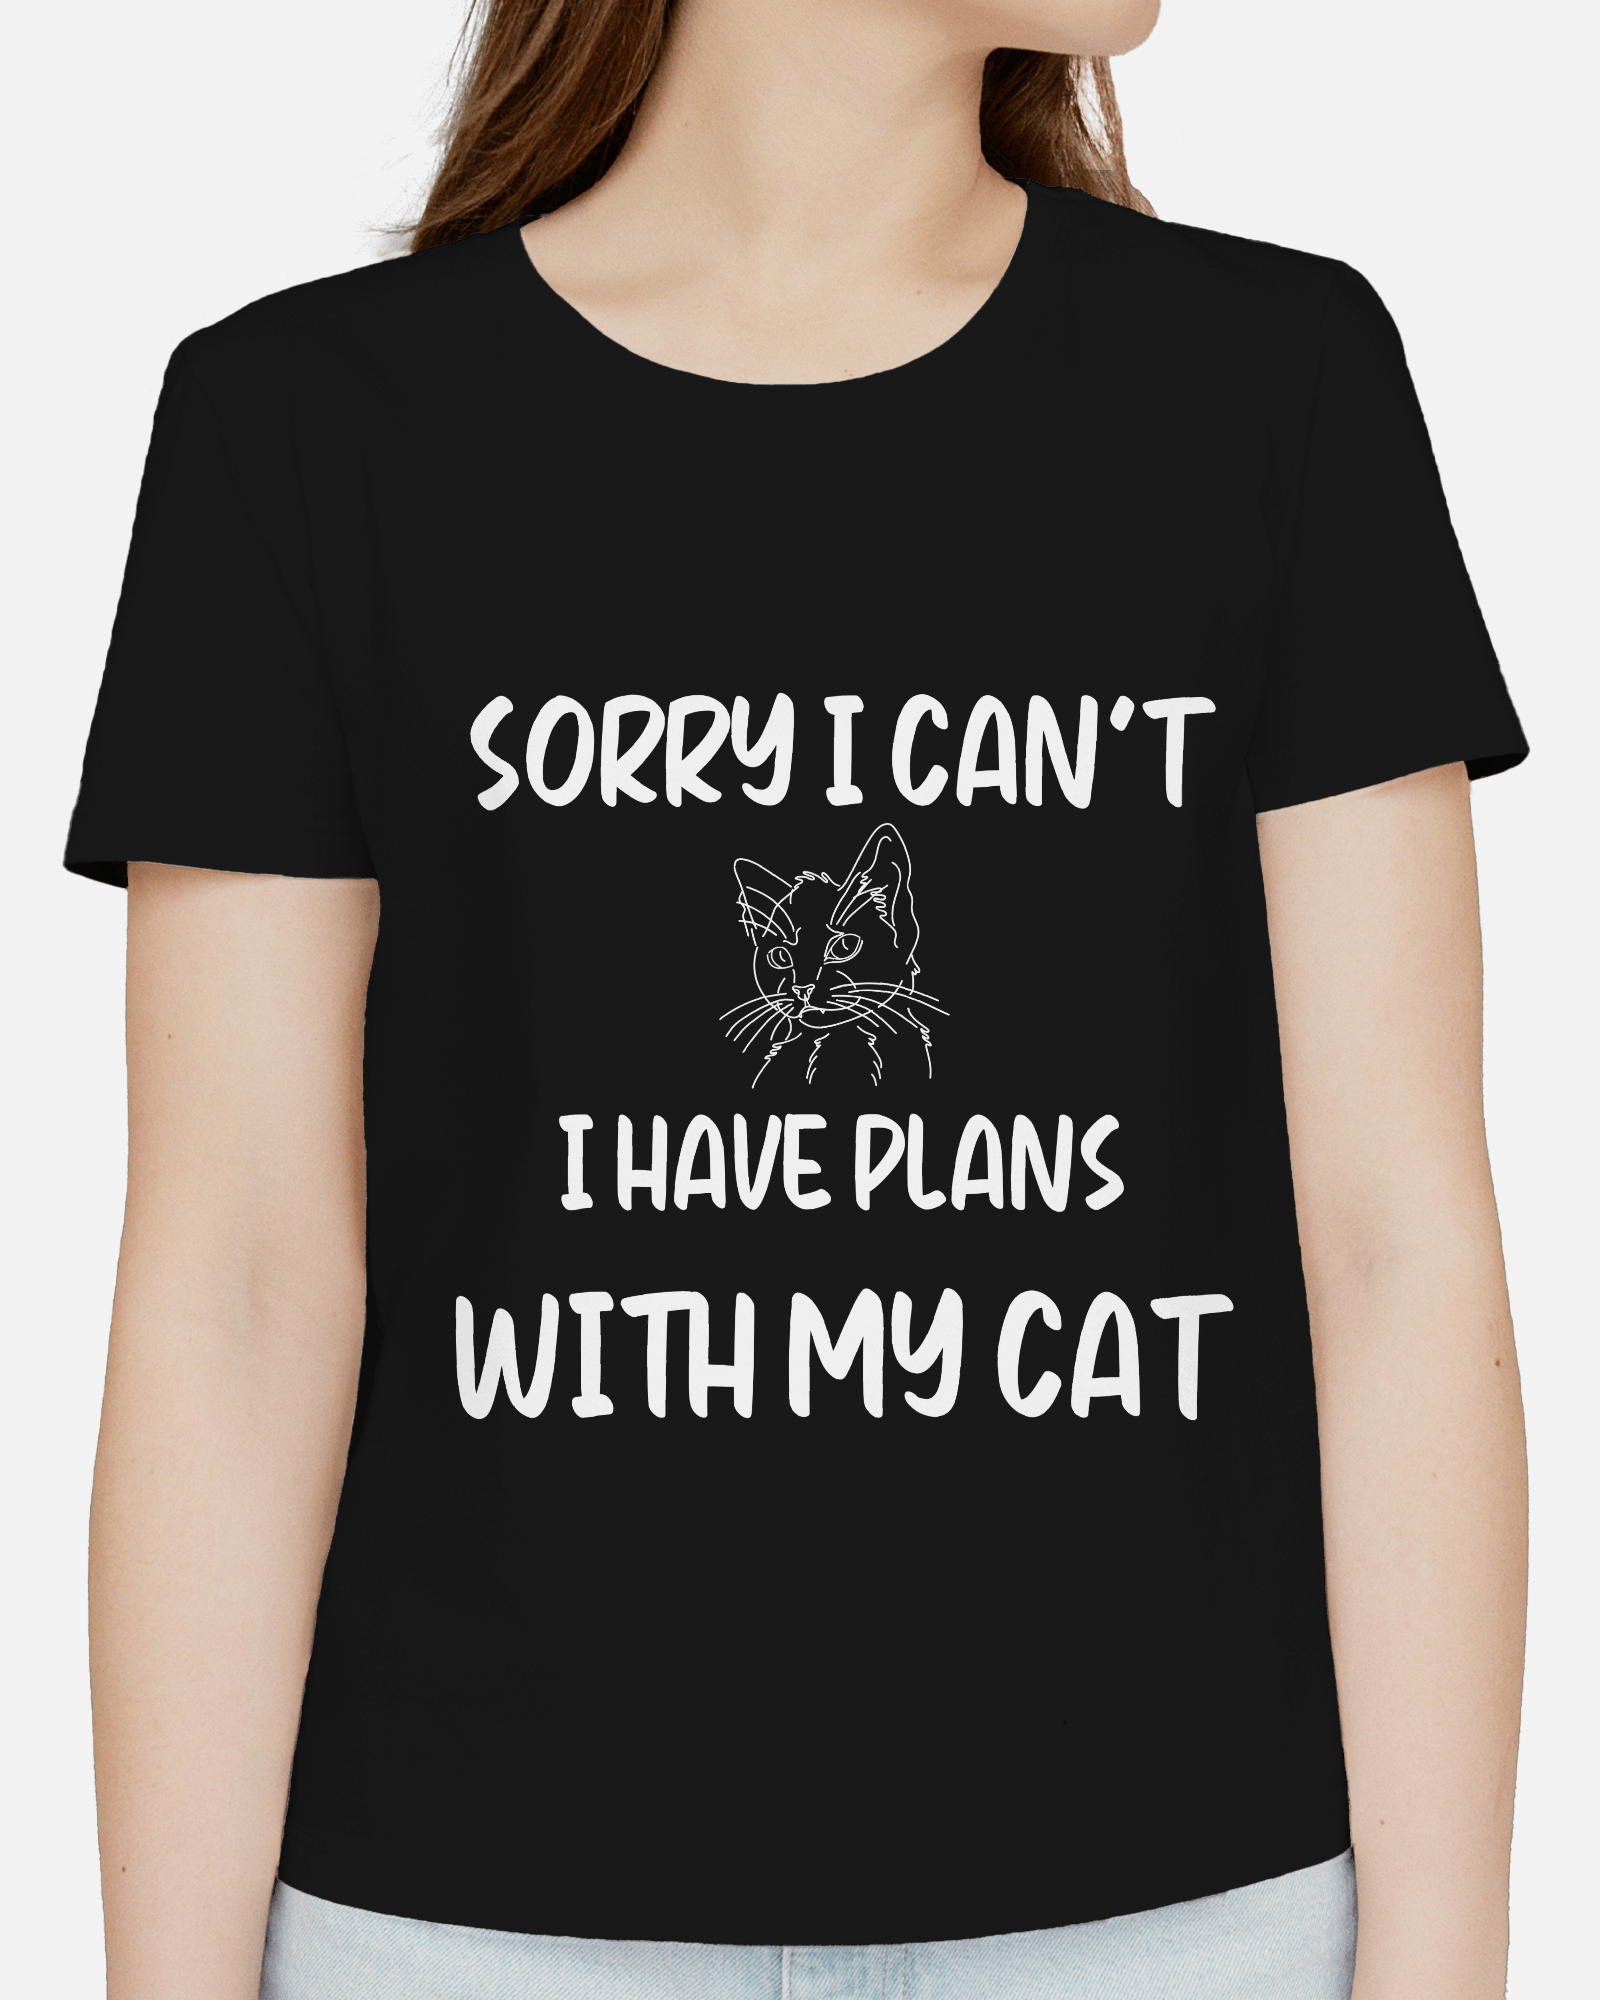 cat shirt for women